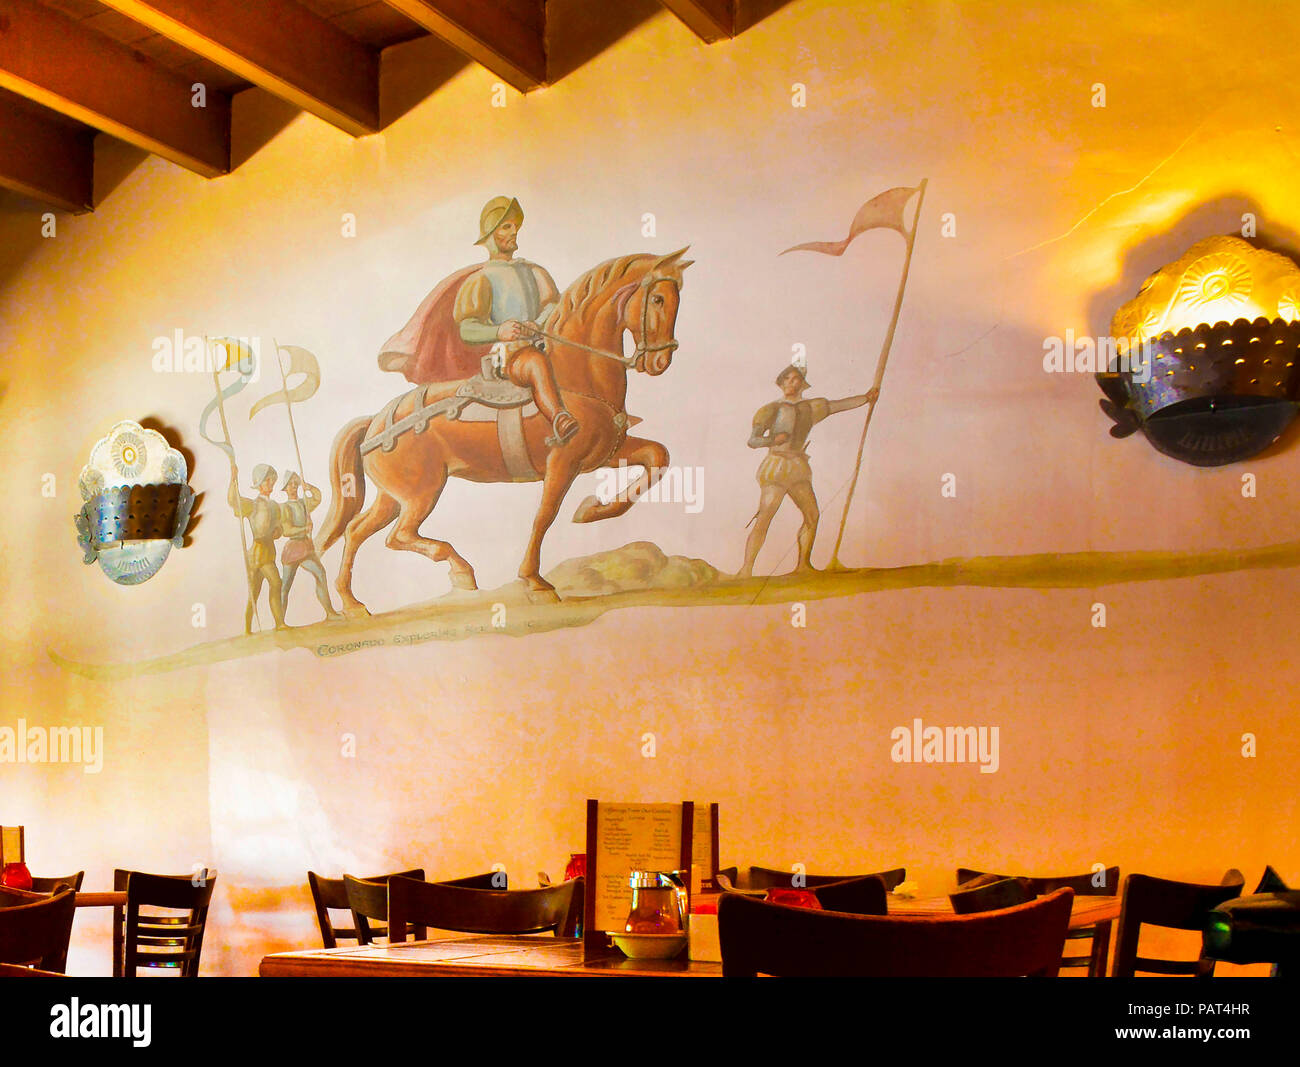 Dessin de Conquistador sur un cheval sur le mur de la Placita, un restaurant mexicain, le plus ancien restaurant de la vieille ville d'Albuquerque, NM, USA Banque D'Images